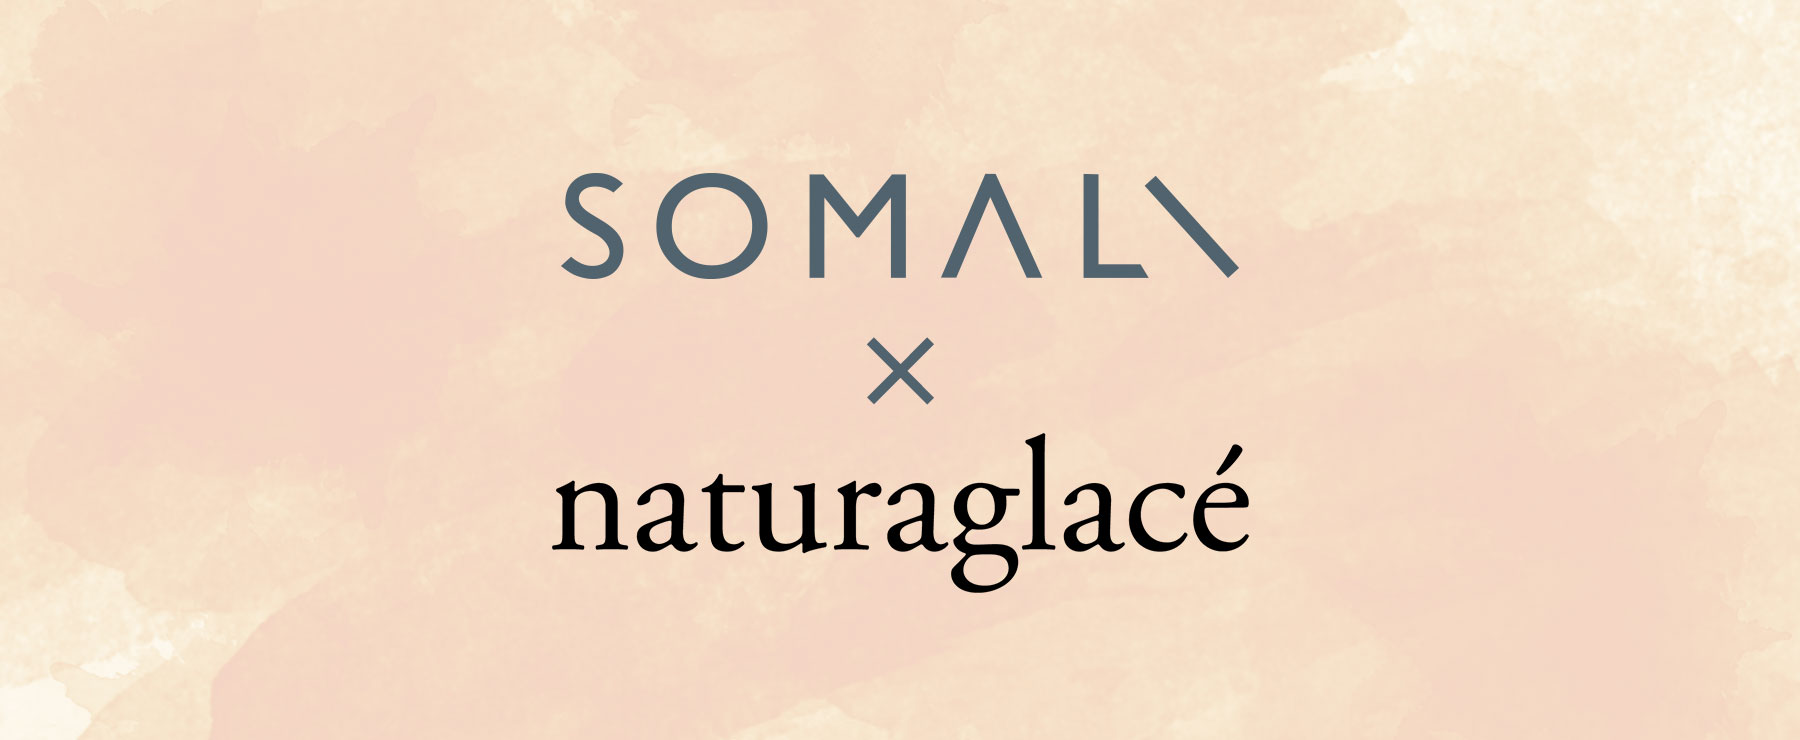 somali × naturaglace